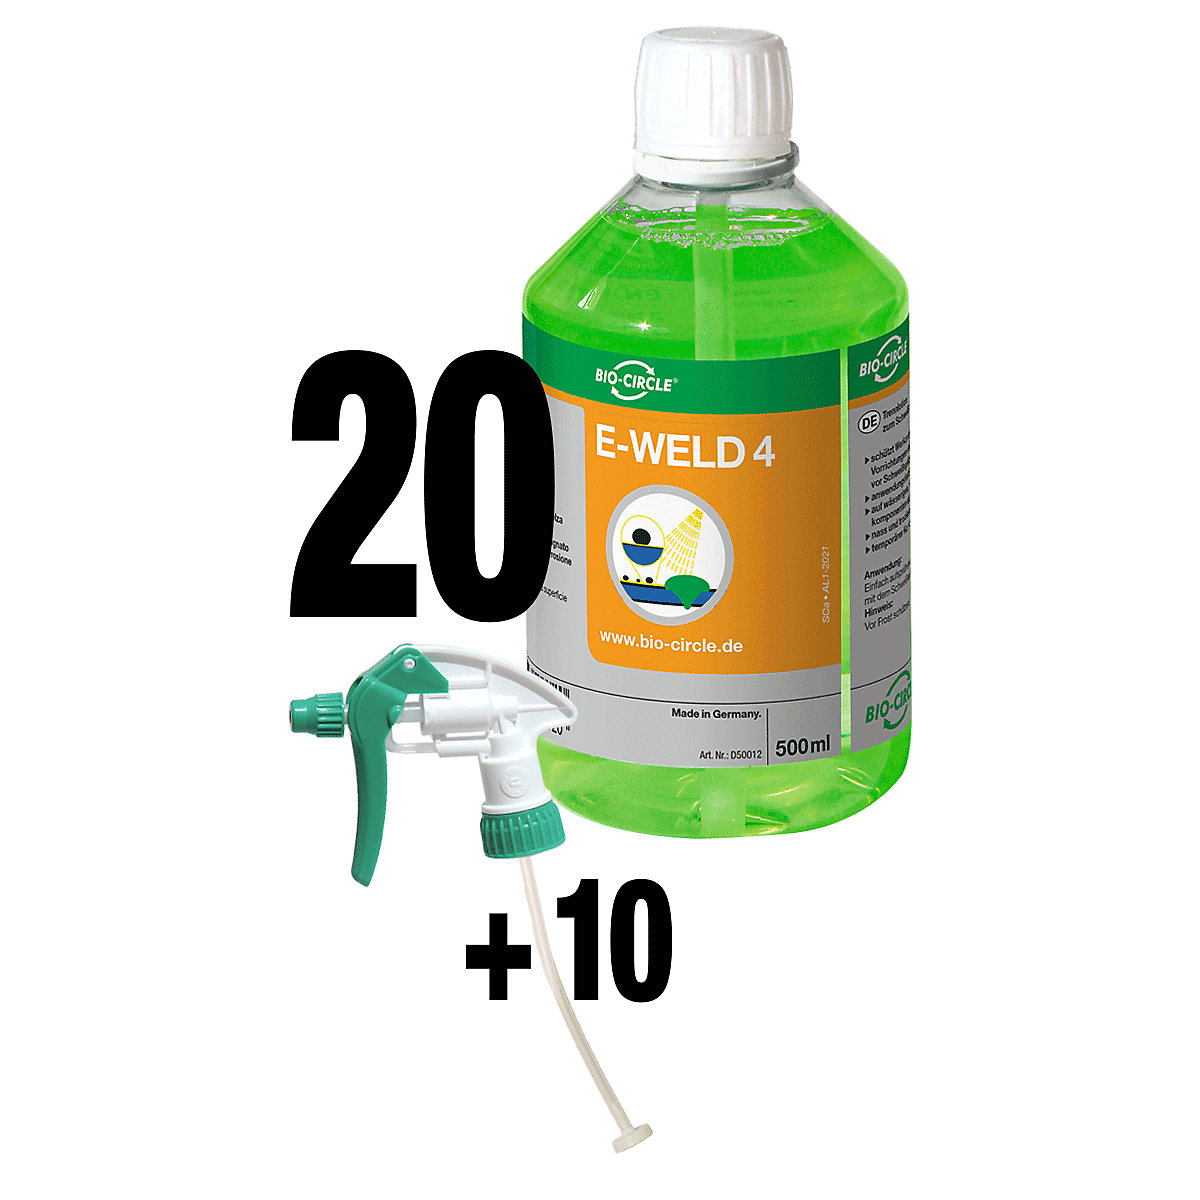 E-WELD 4 hegesztésvédő spray – Bio-Circle